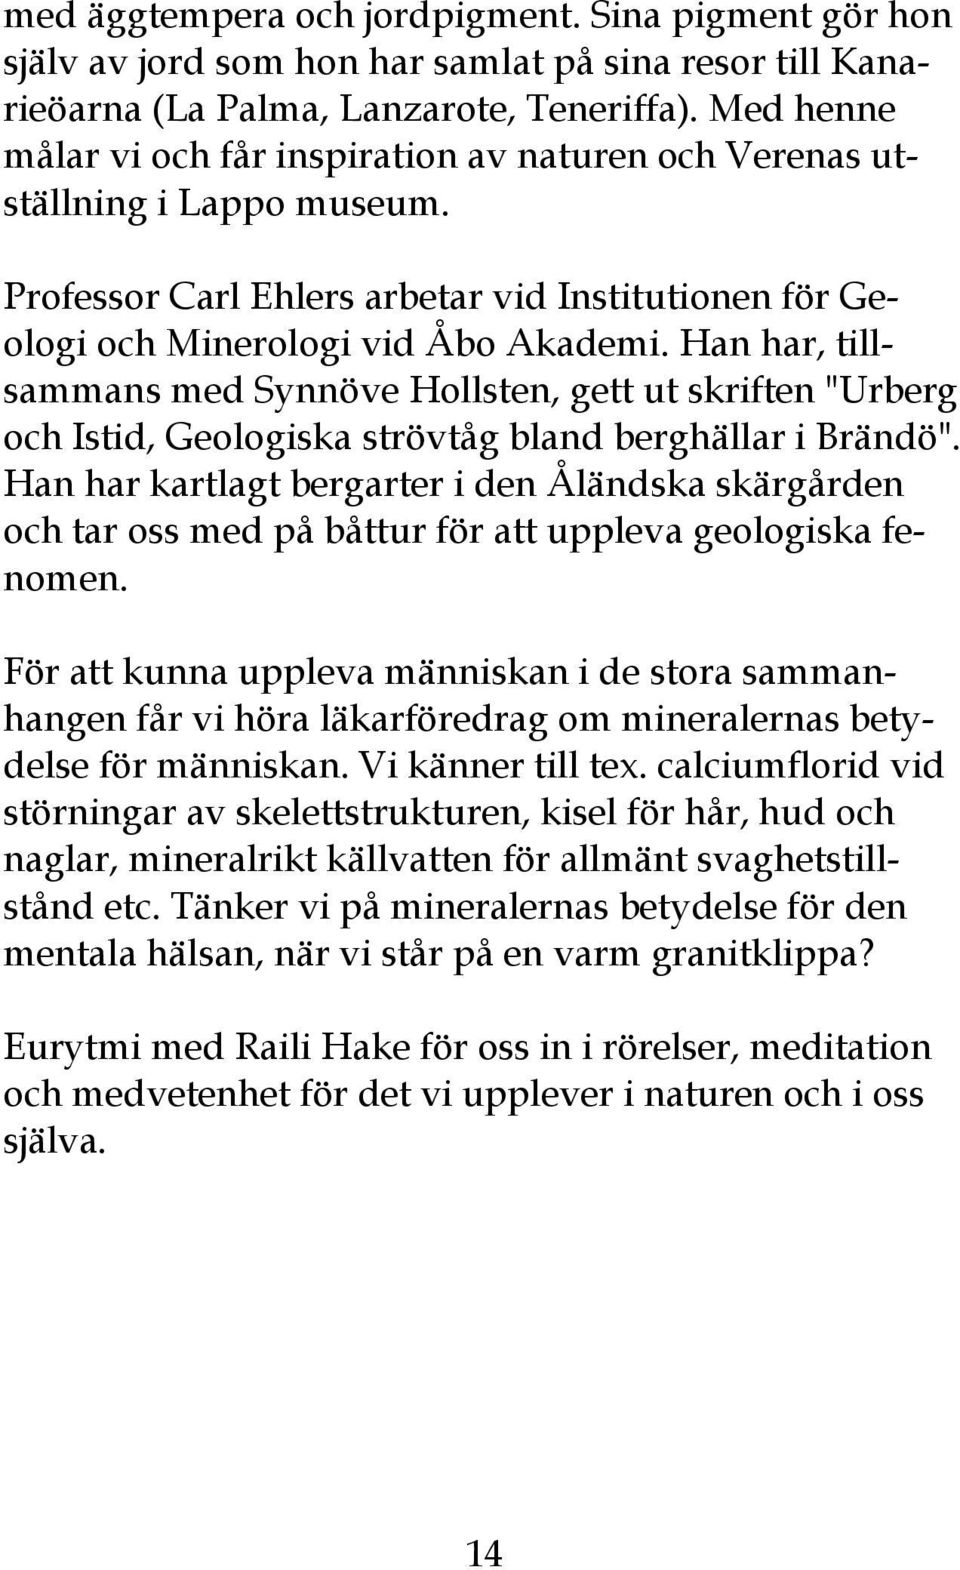 Han har, tillsammans med Synnöve Hollsten, gett ut skriften "Urberg och Istid, Geologiska strövtåg bland berghällar i Brändö".